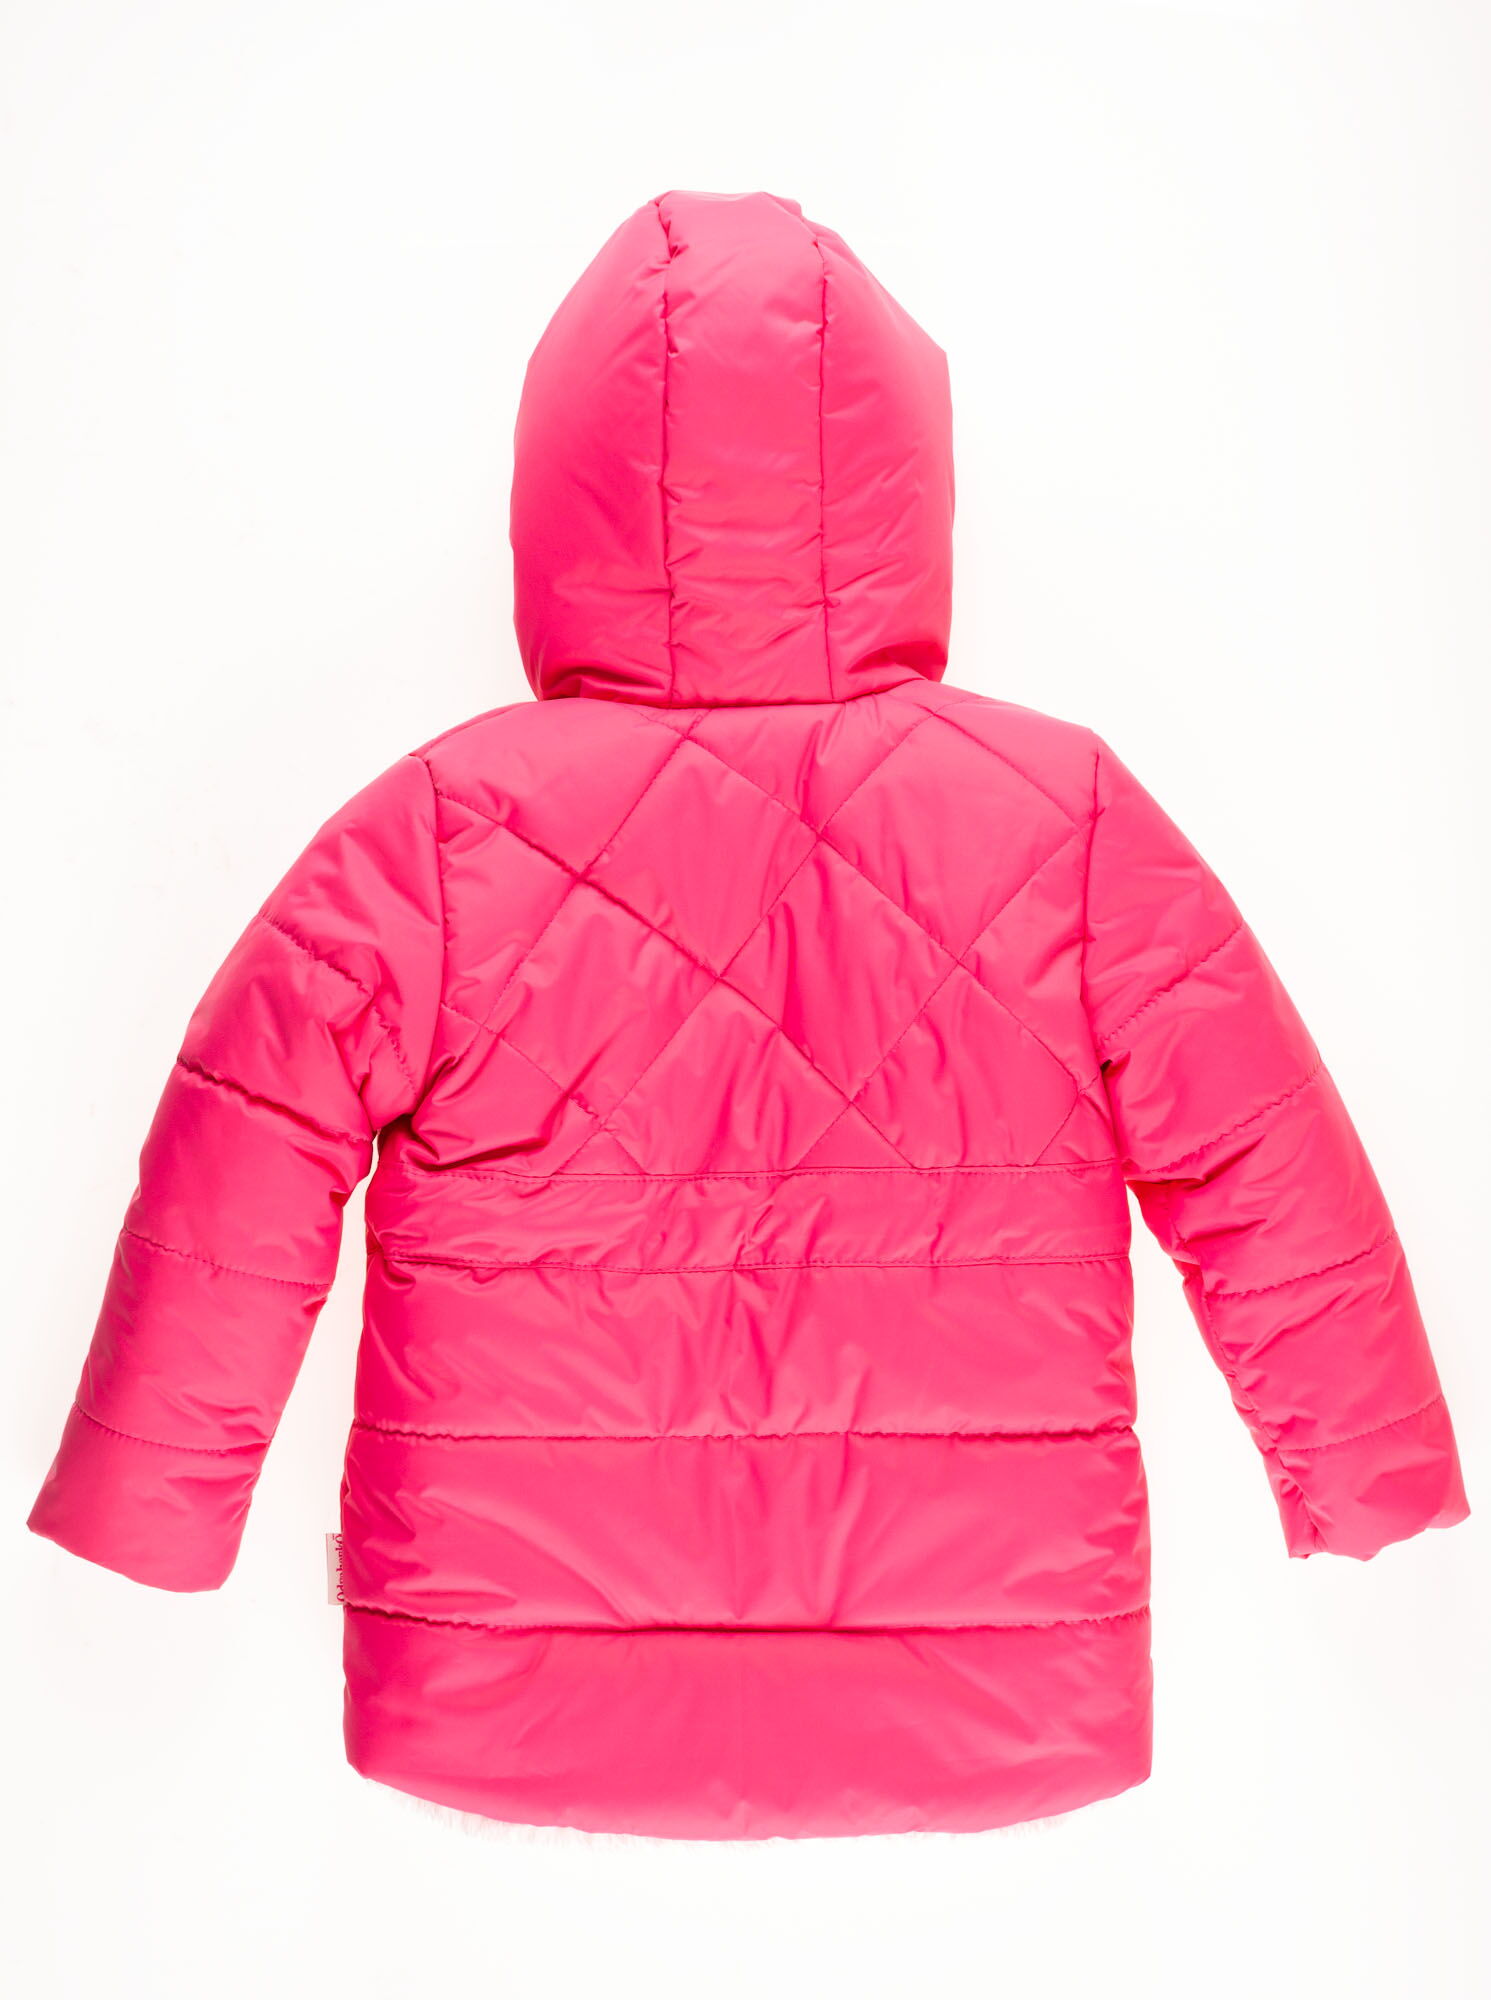 Куртка зимняя для девочки Одягайко малиновая 20019 - размеры